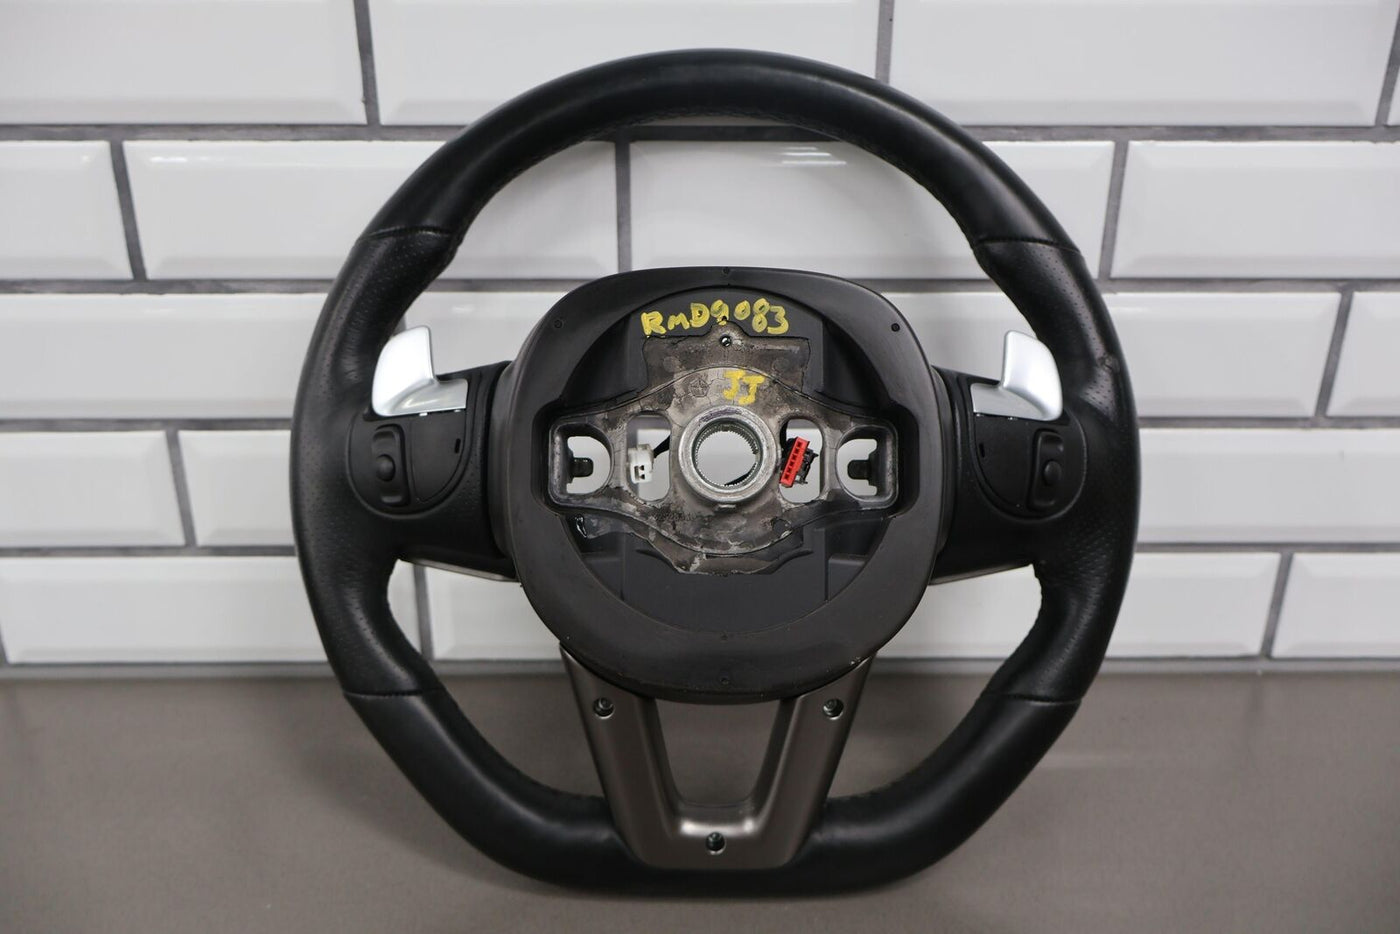 19-23 Dodge Charger SRT Flat Bottom Leather Steering Wheel OEM Black/Silver